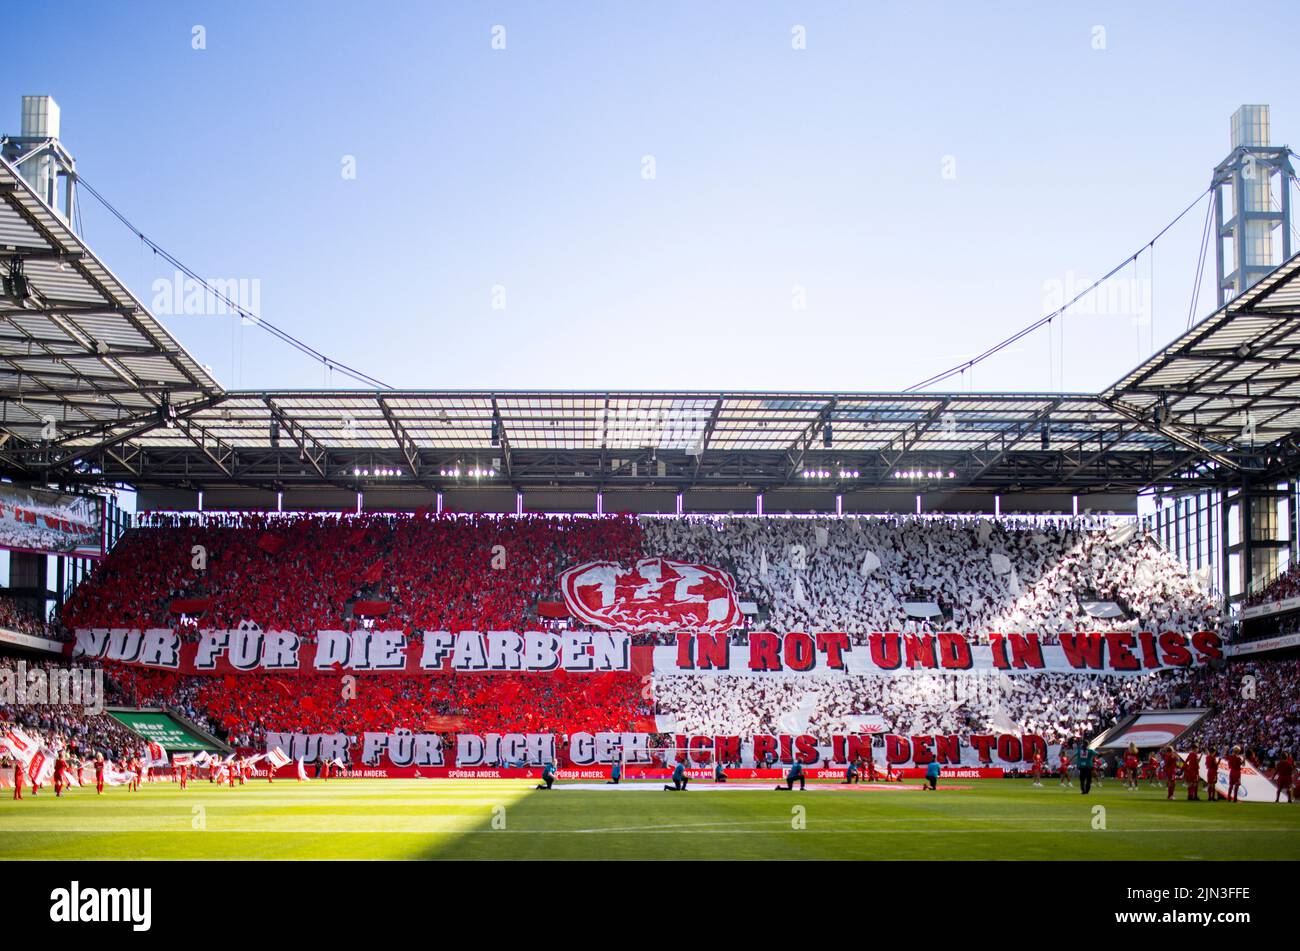 FC Fans mit Choreographie: Nur für die Farben in rot und weiss - Nur für dich geh ich bis in den Tod 1. FC Köln - FC Schalke 04 07.08.2022, Fussball; Stock Photo